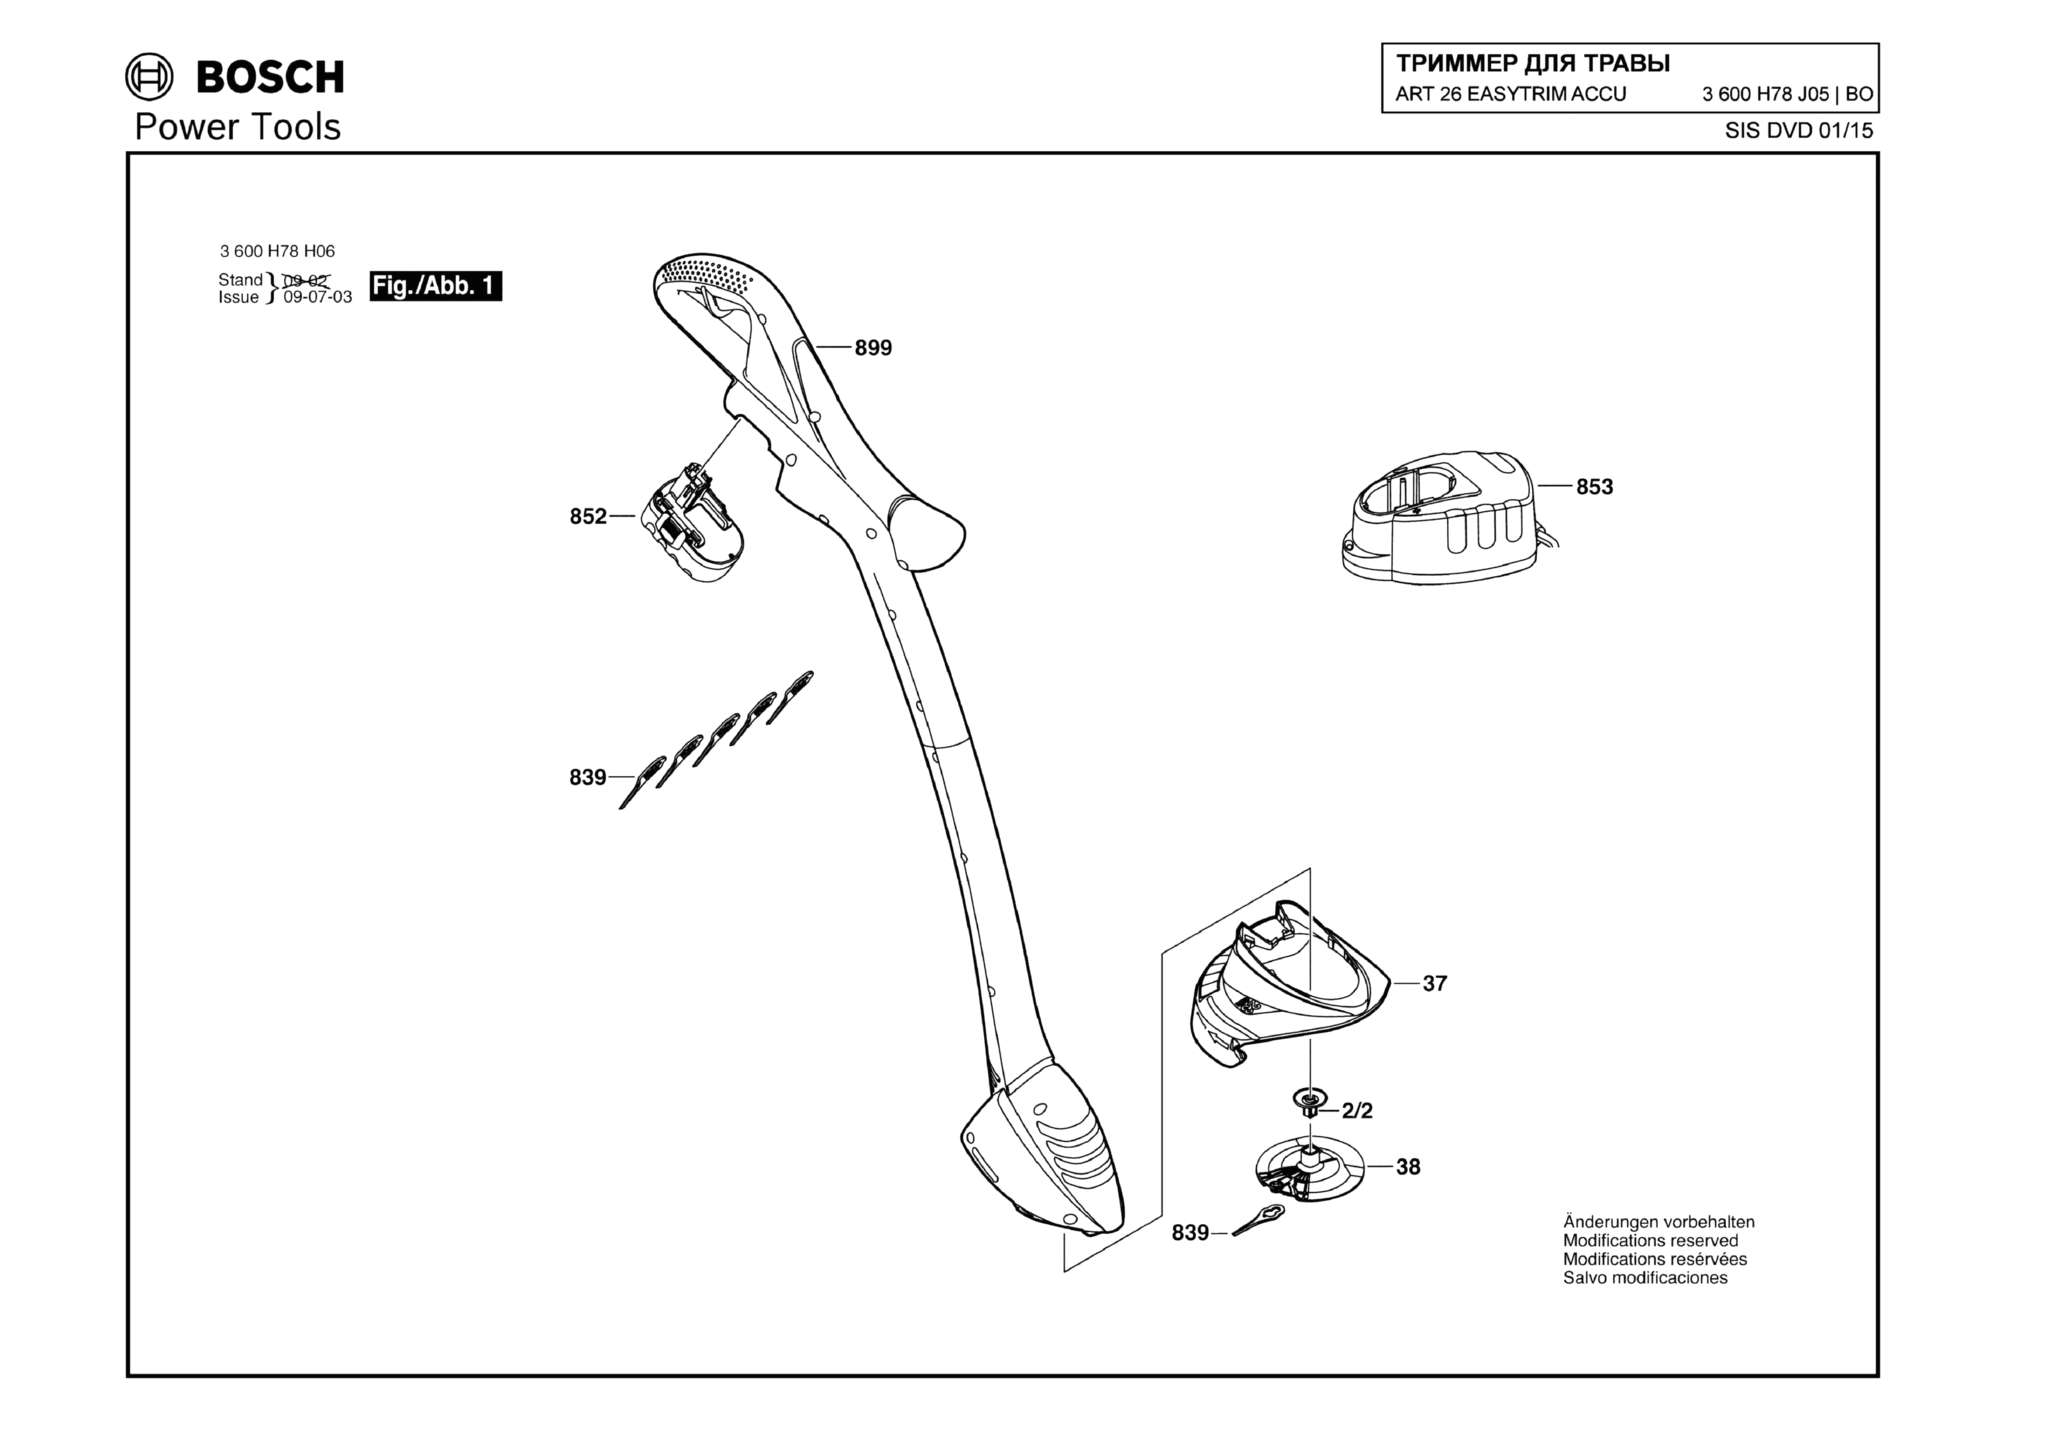 Запчасти, схема и деталировка Bosch ART 26 EASYTRIM ACCU (ТИП 3600H78J05)